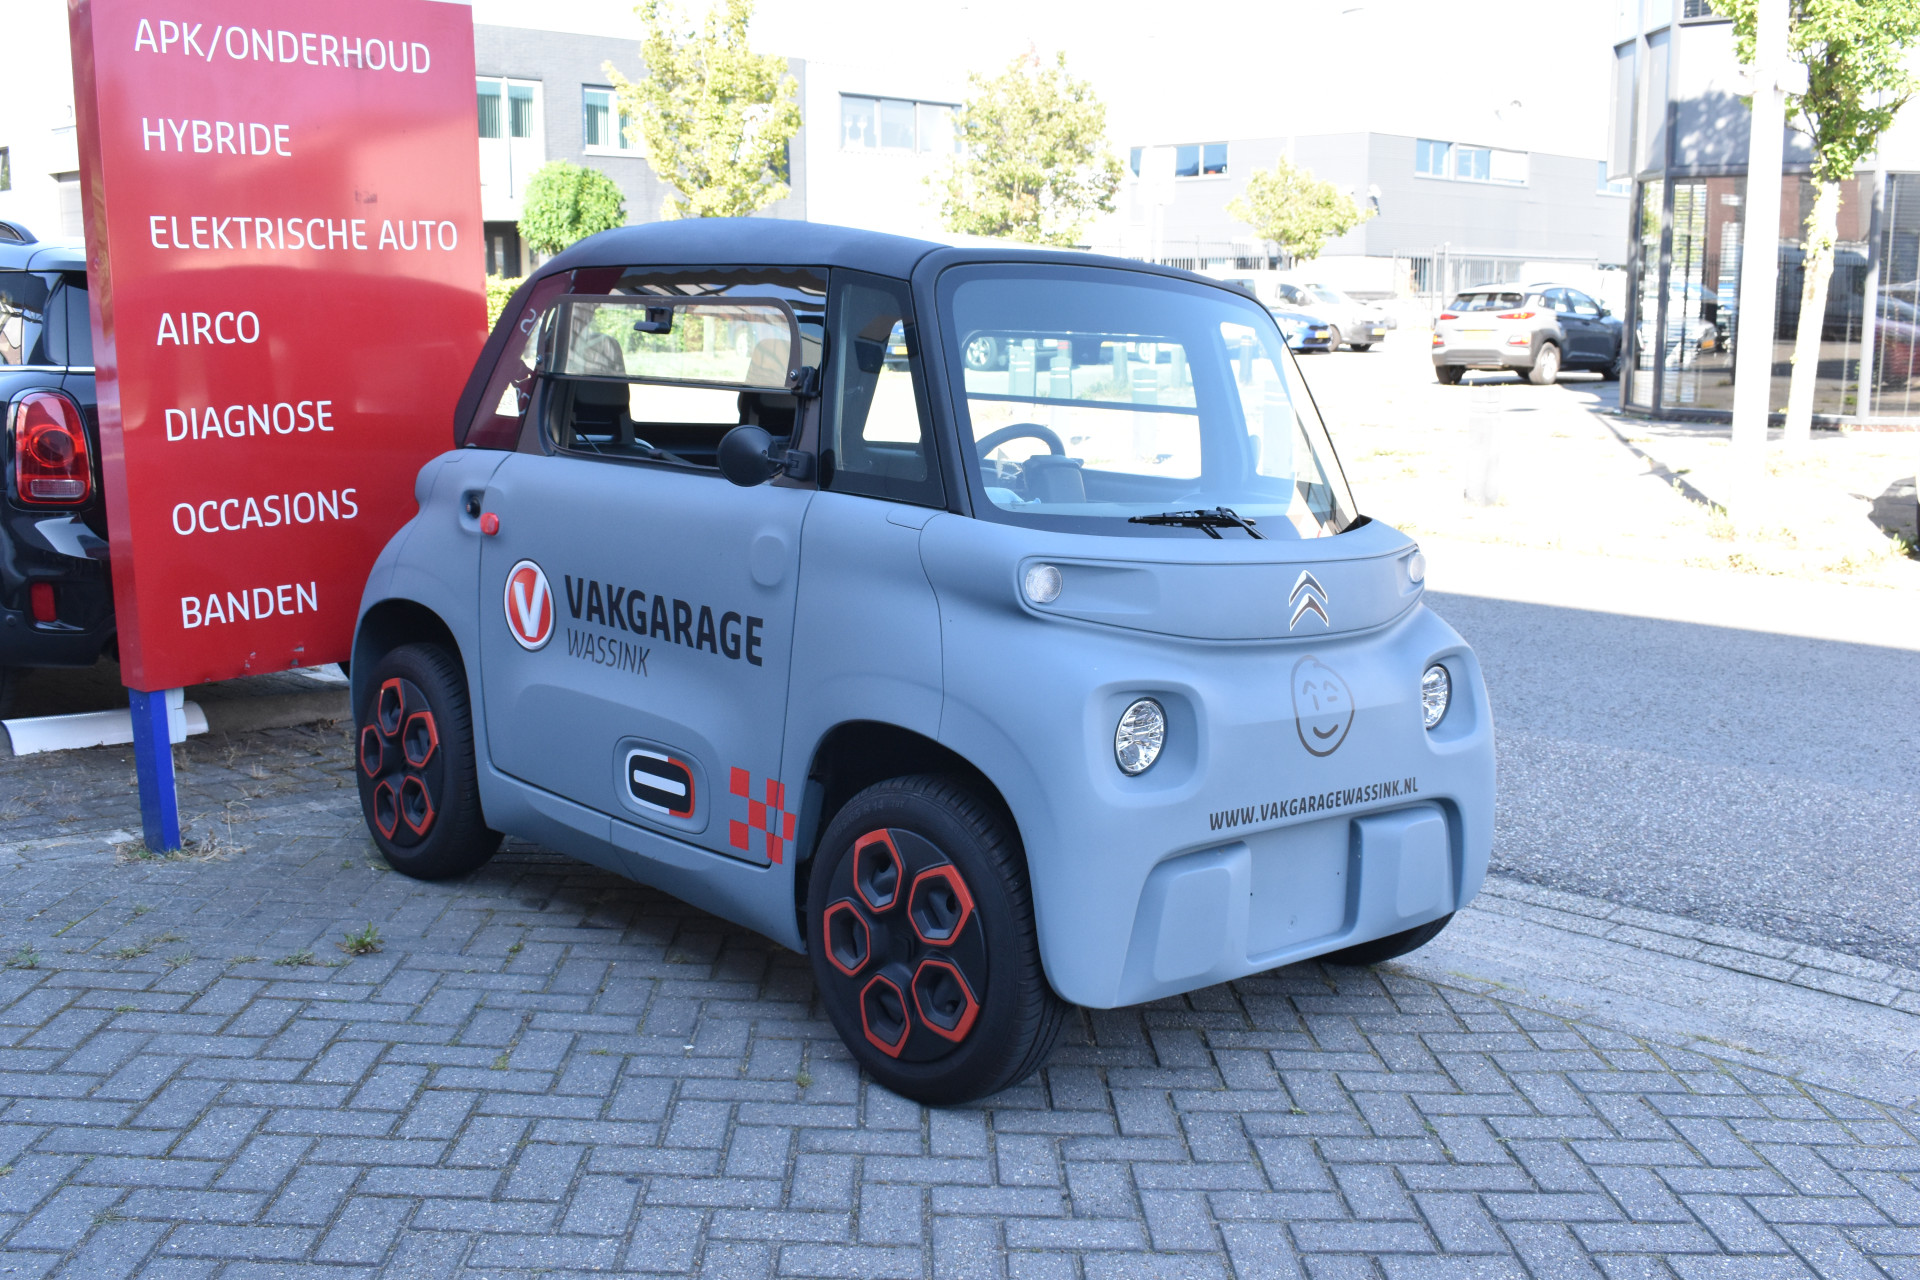 Citroën Brommobiel AMI 45 km/h 100% Elektrisch geen wegenbelasting / Automaat vanaf 16 jaar brommerrijbewijs bij viaBOVAG.nl